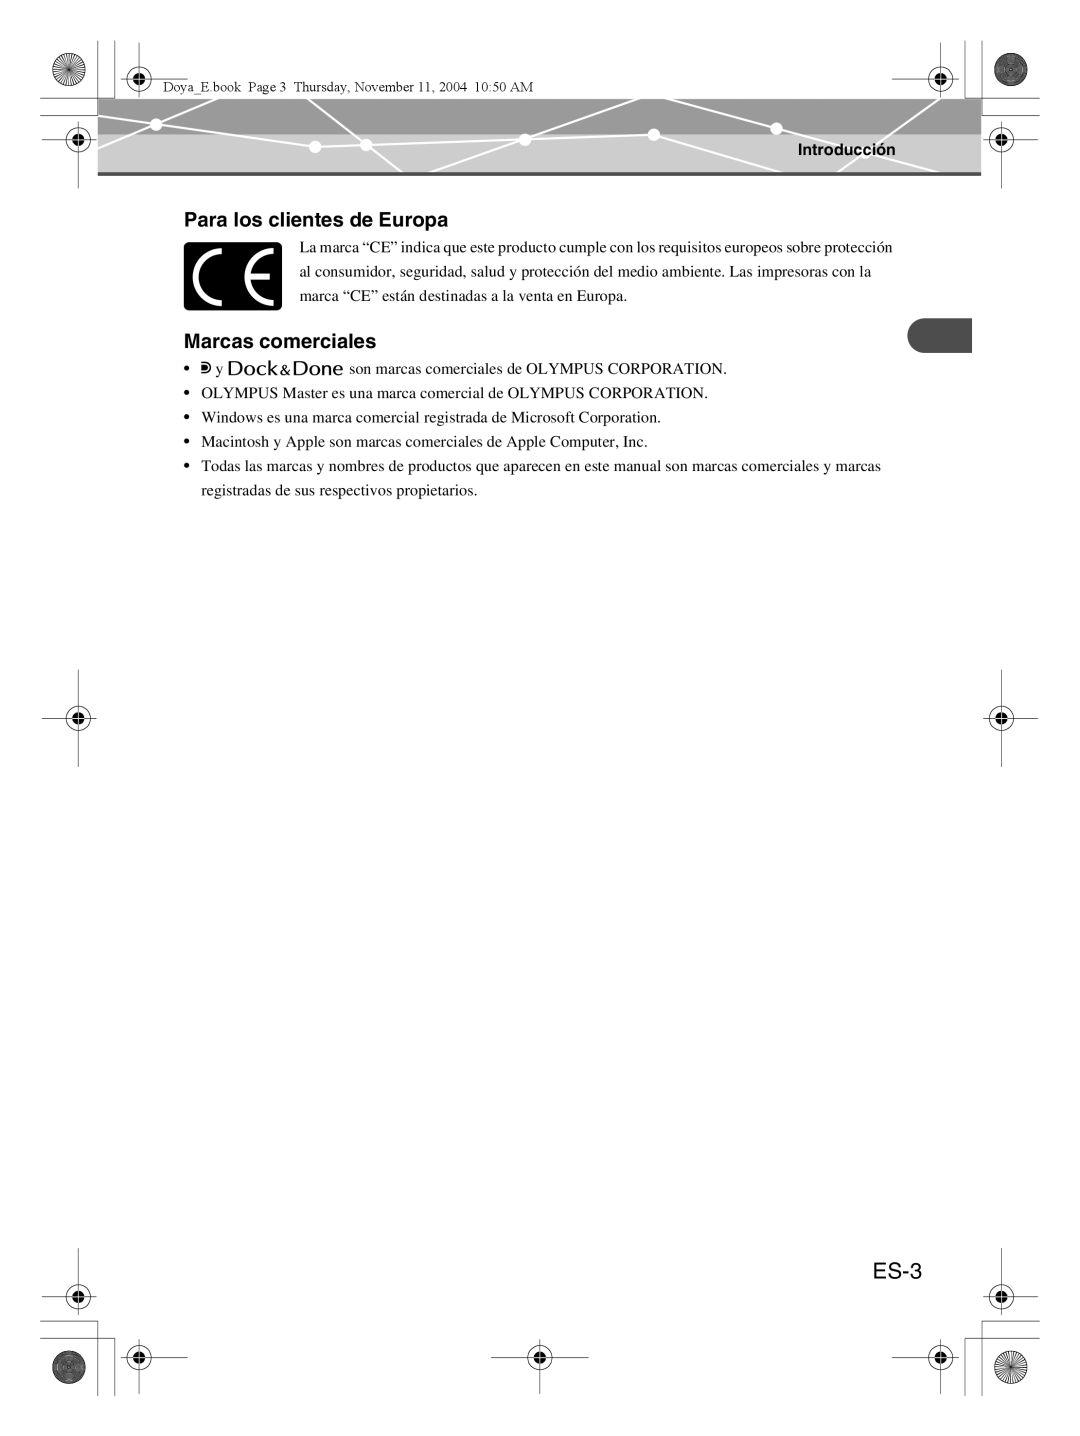 Olympus P-S100 user manual ES-3, Para los clientes de Europa, Marcas comerciales, Introducción 